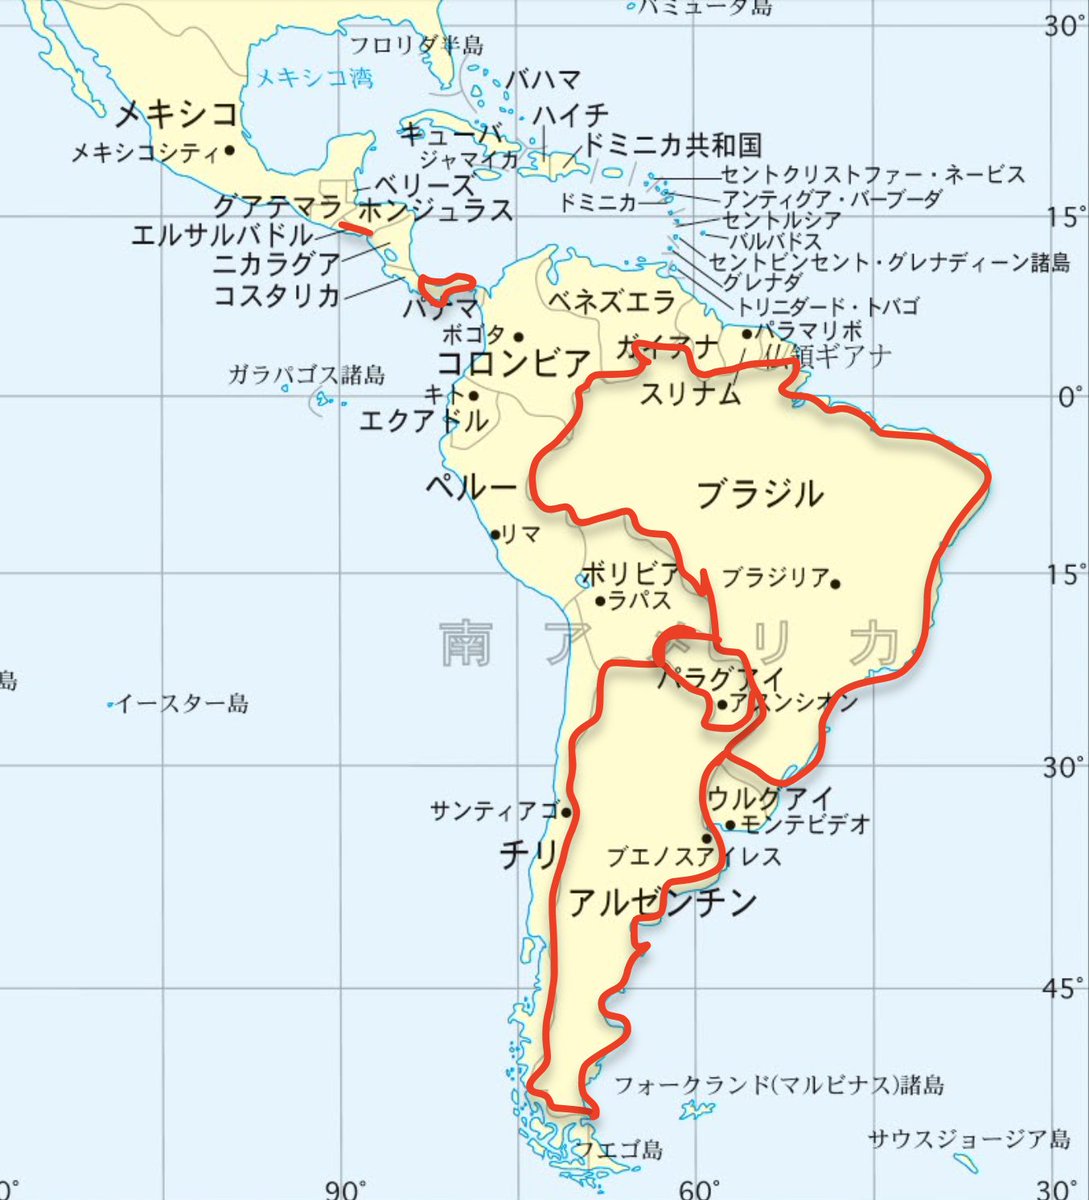 Gomechi Metavaders日本非公式hq Coin Postによるとエルサルバドルの他 アルゼンチン ブラジル パナマ パラグアイがビットコインを法定通貨とする案をレーザーアイで支持 流石にメキシコはないとは思いますが 地図でみると中南米全体に波及する可能性